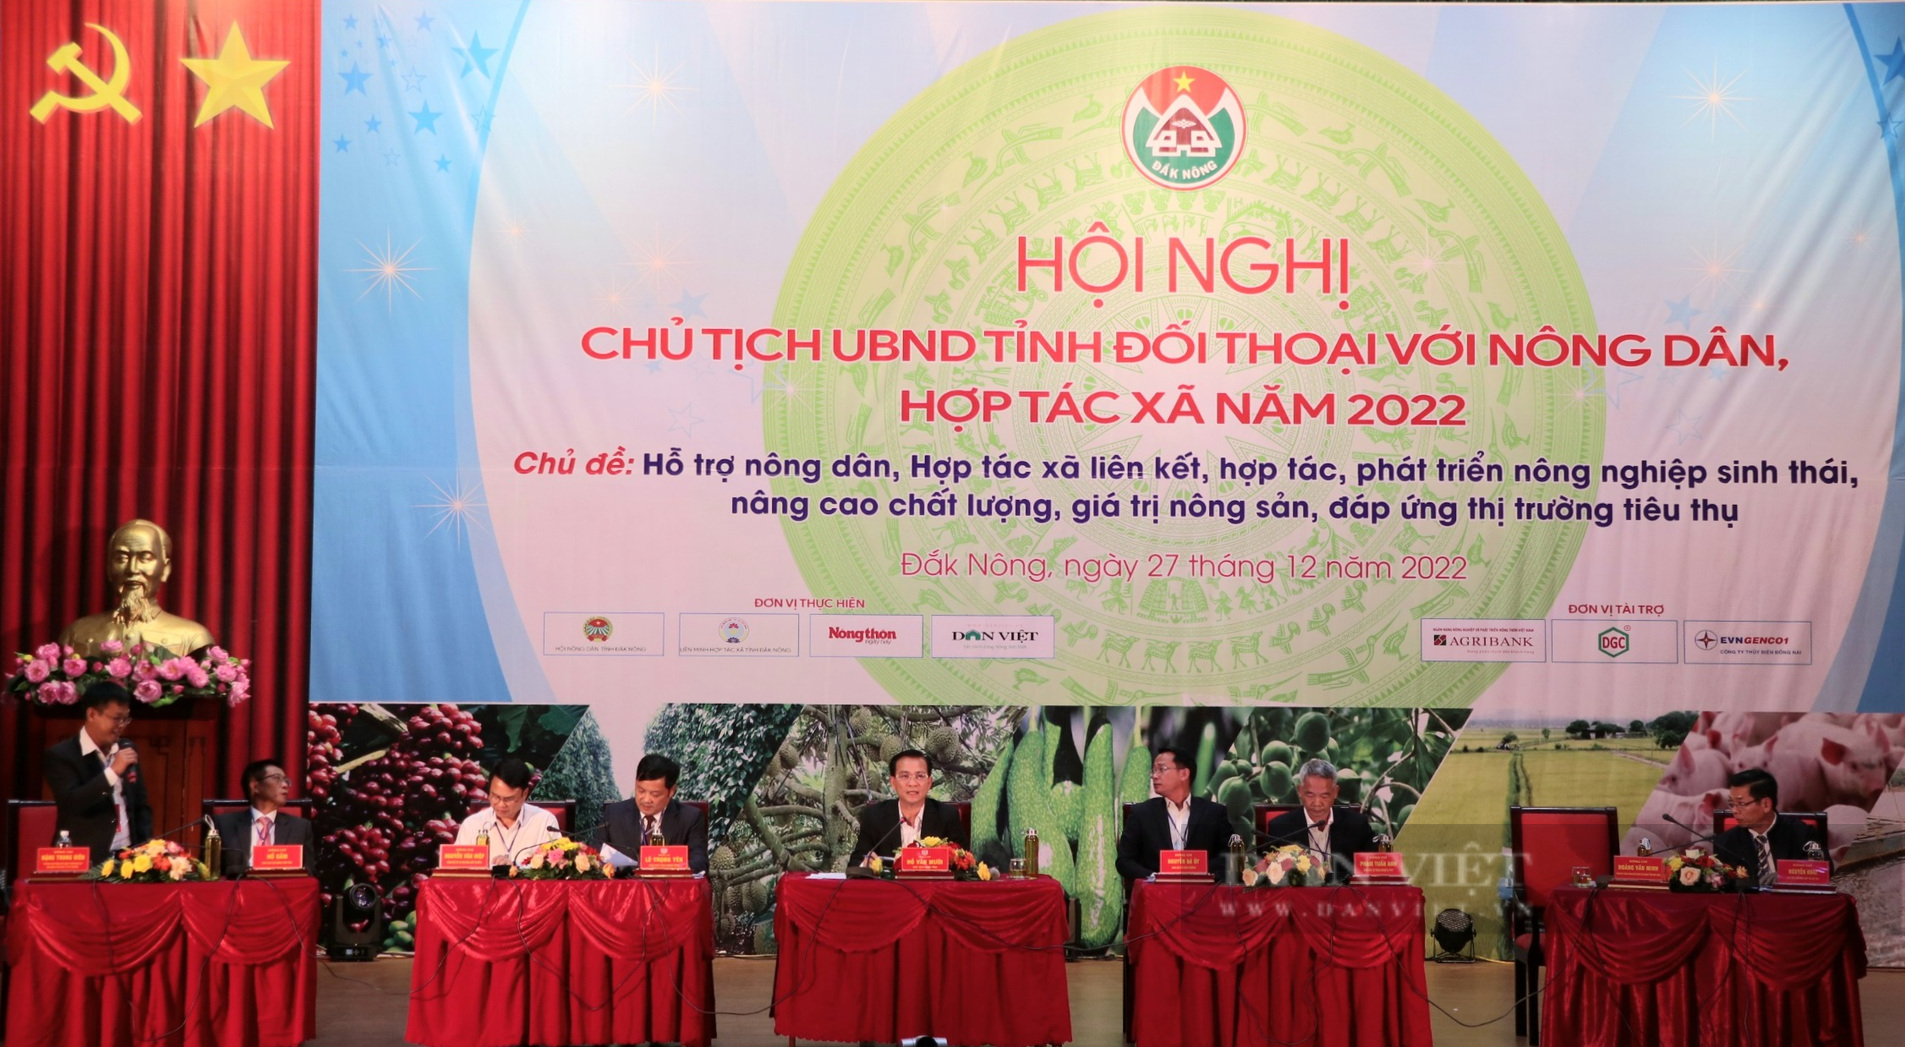 Chủ tịch tỉnh Đắk Nông đối thoại với nông dân: Tín dụng và thương hiệu nông sản được quan tâm - Ảnh 8.